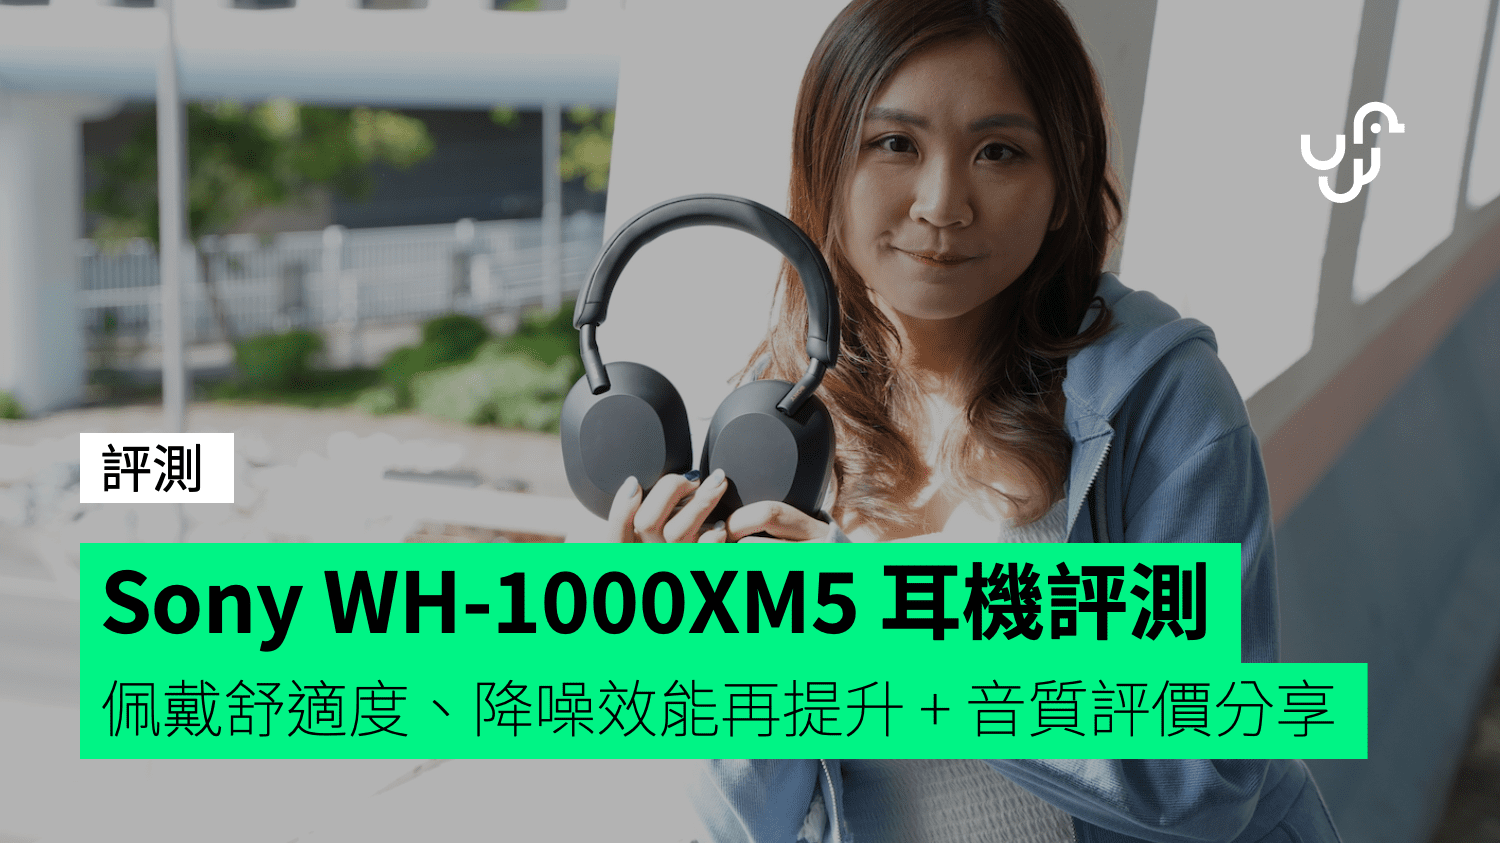 【評測】Sony WH-1000XM5 無線降噪耳機 佩戴舒適度、降噪效能再提升 + 音質評價分享 - 香港 unwire.hk